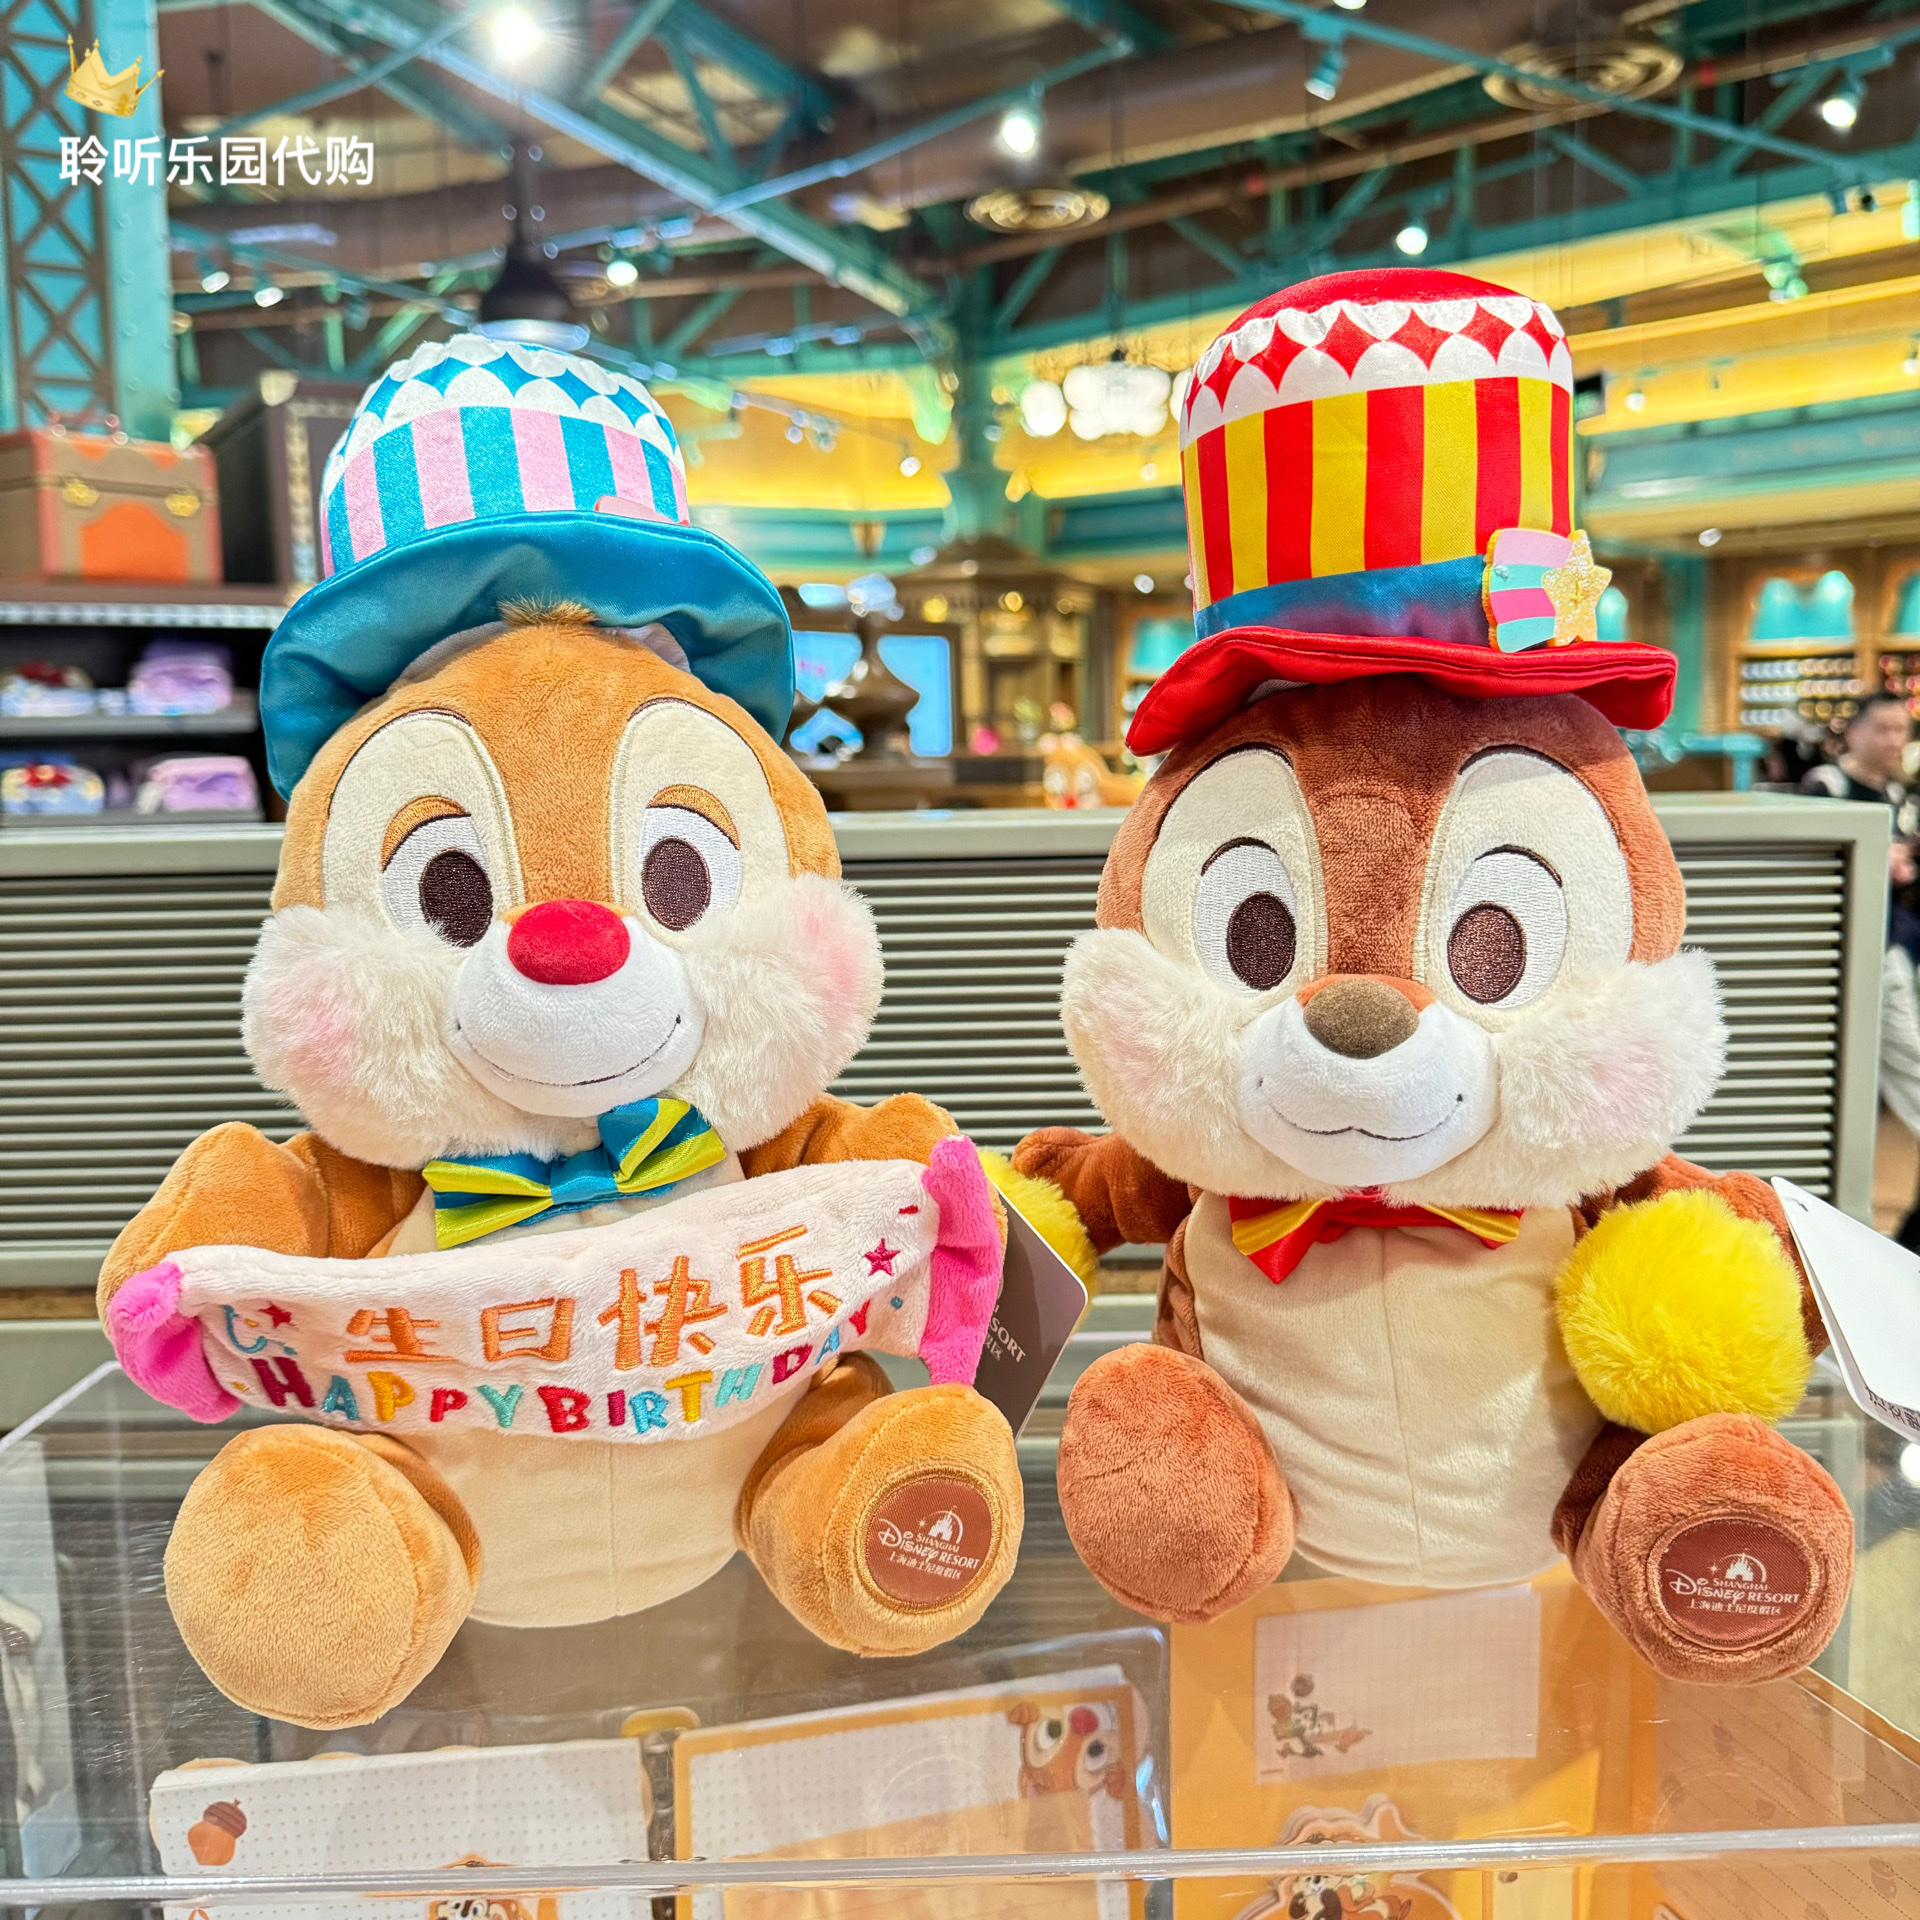 上海迪士尼国内代购奇奇蒂蒂生日快乐毛绒玩偶玩具公仔手偶礼物